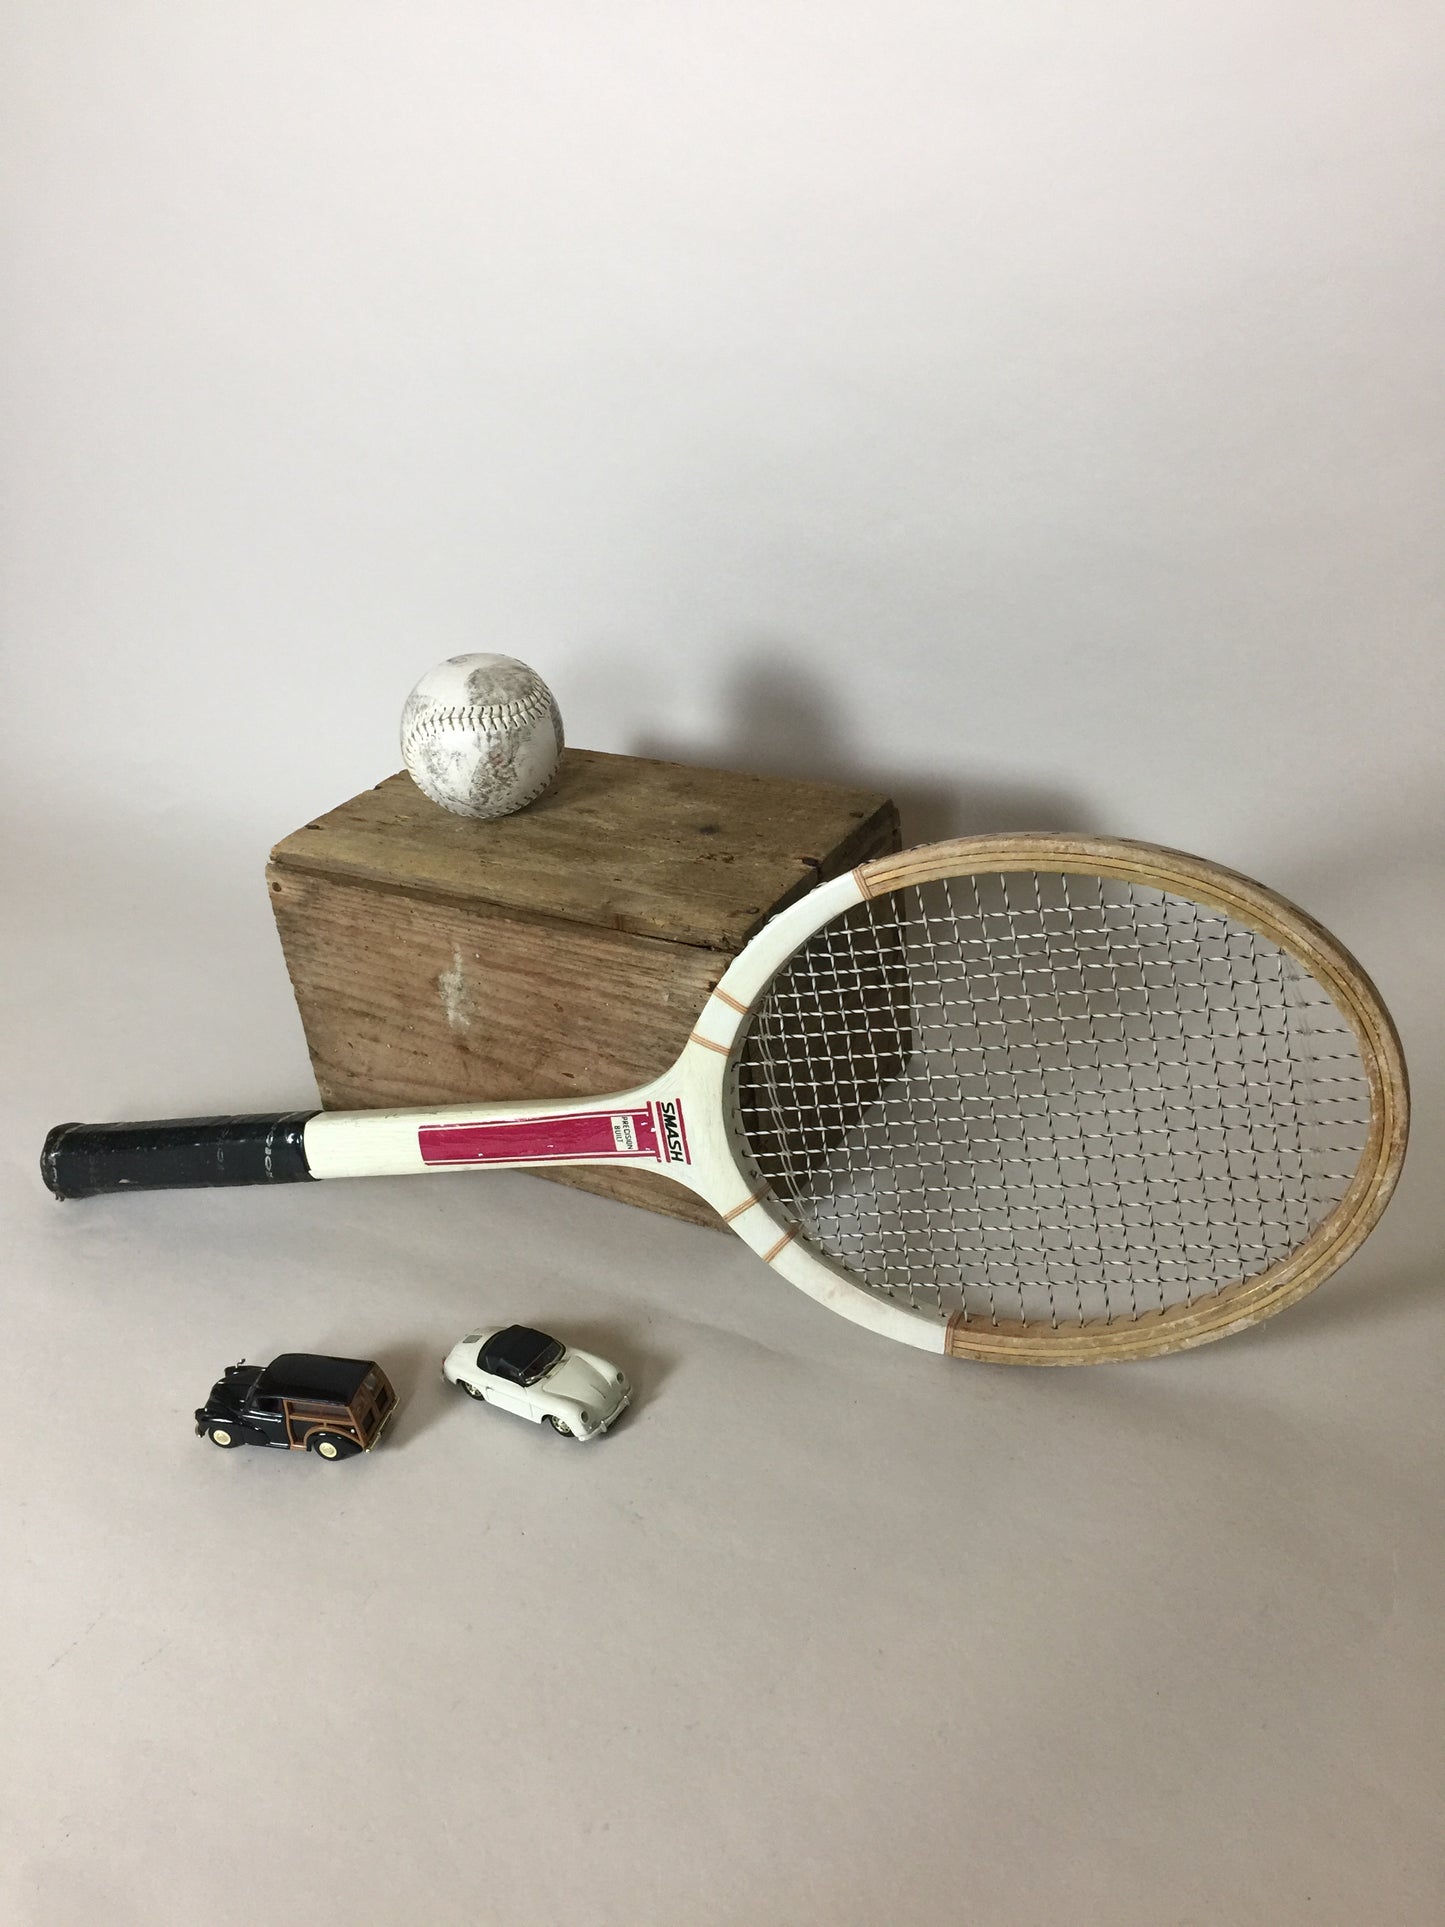 Schöner alter Tennisschläger